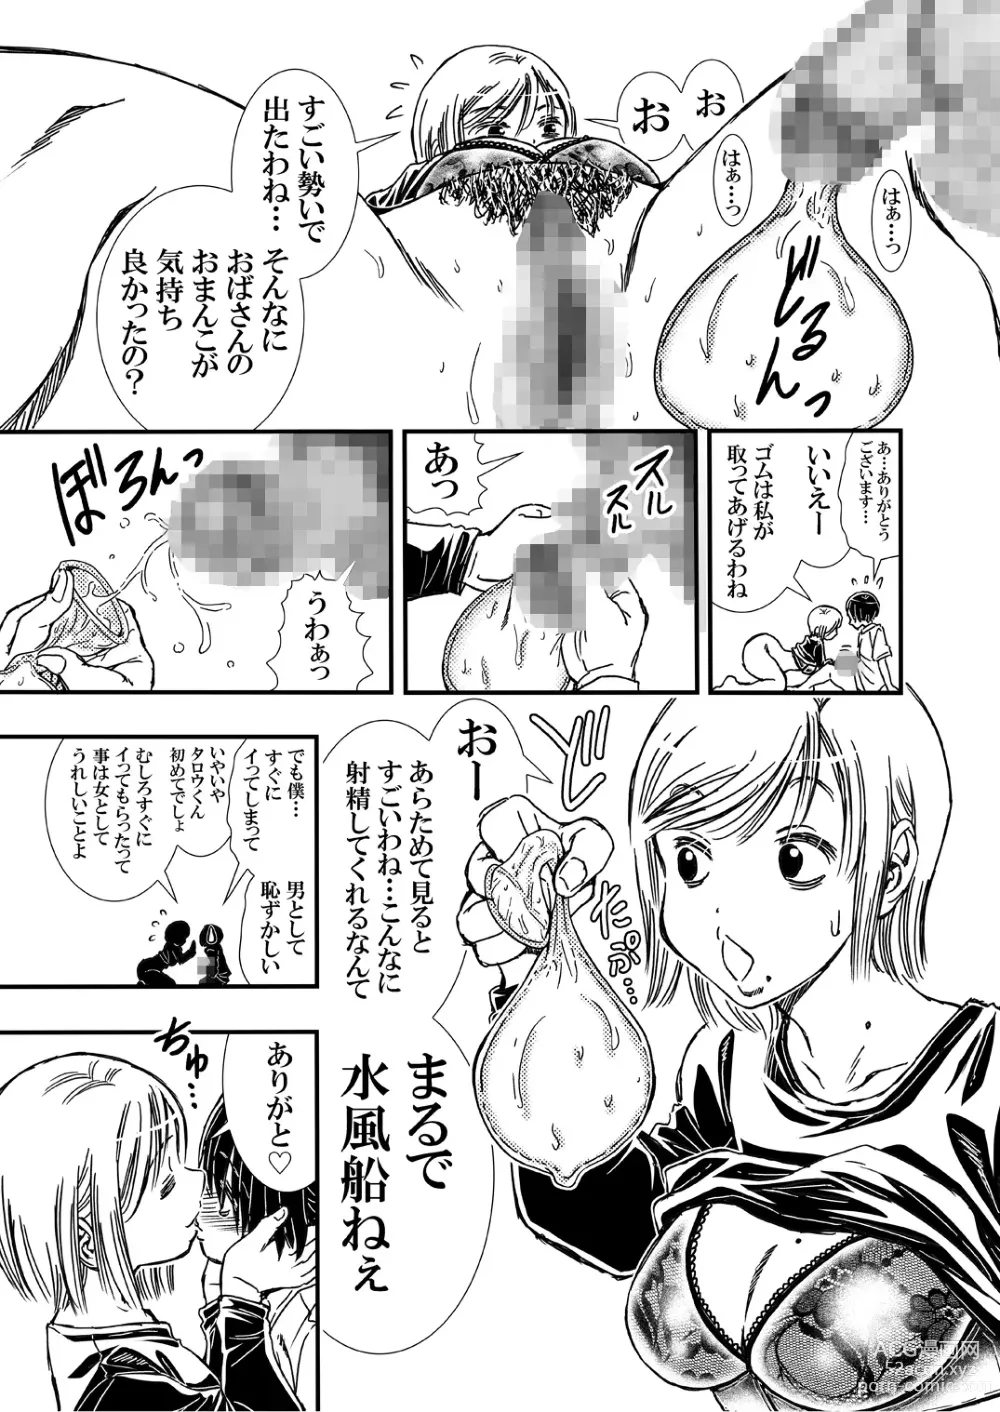 Page 9 of doujinshi Tomodachi Haha to Yatteshimatte Kimazui